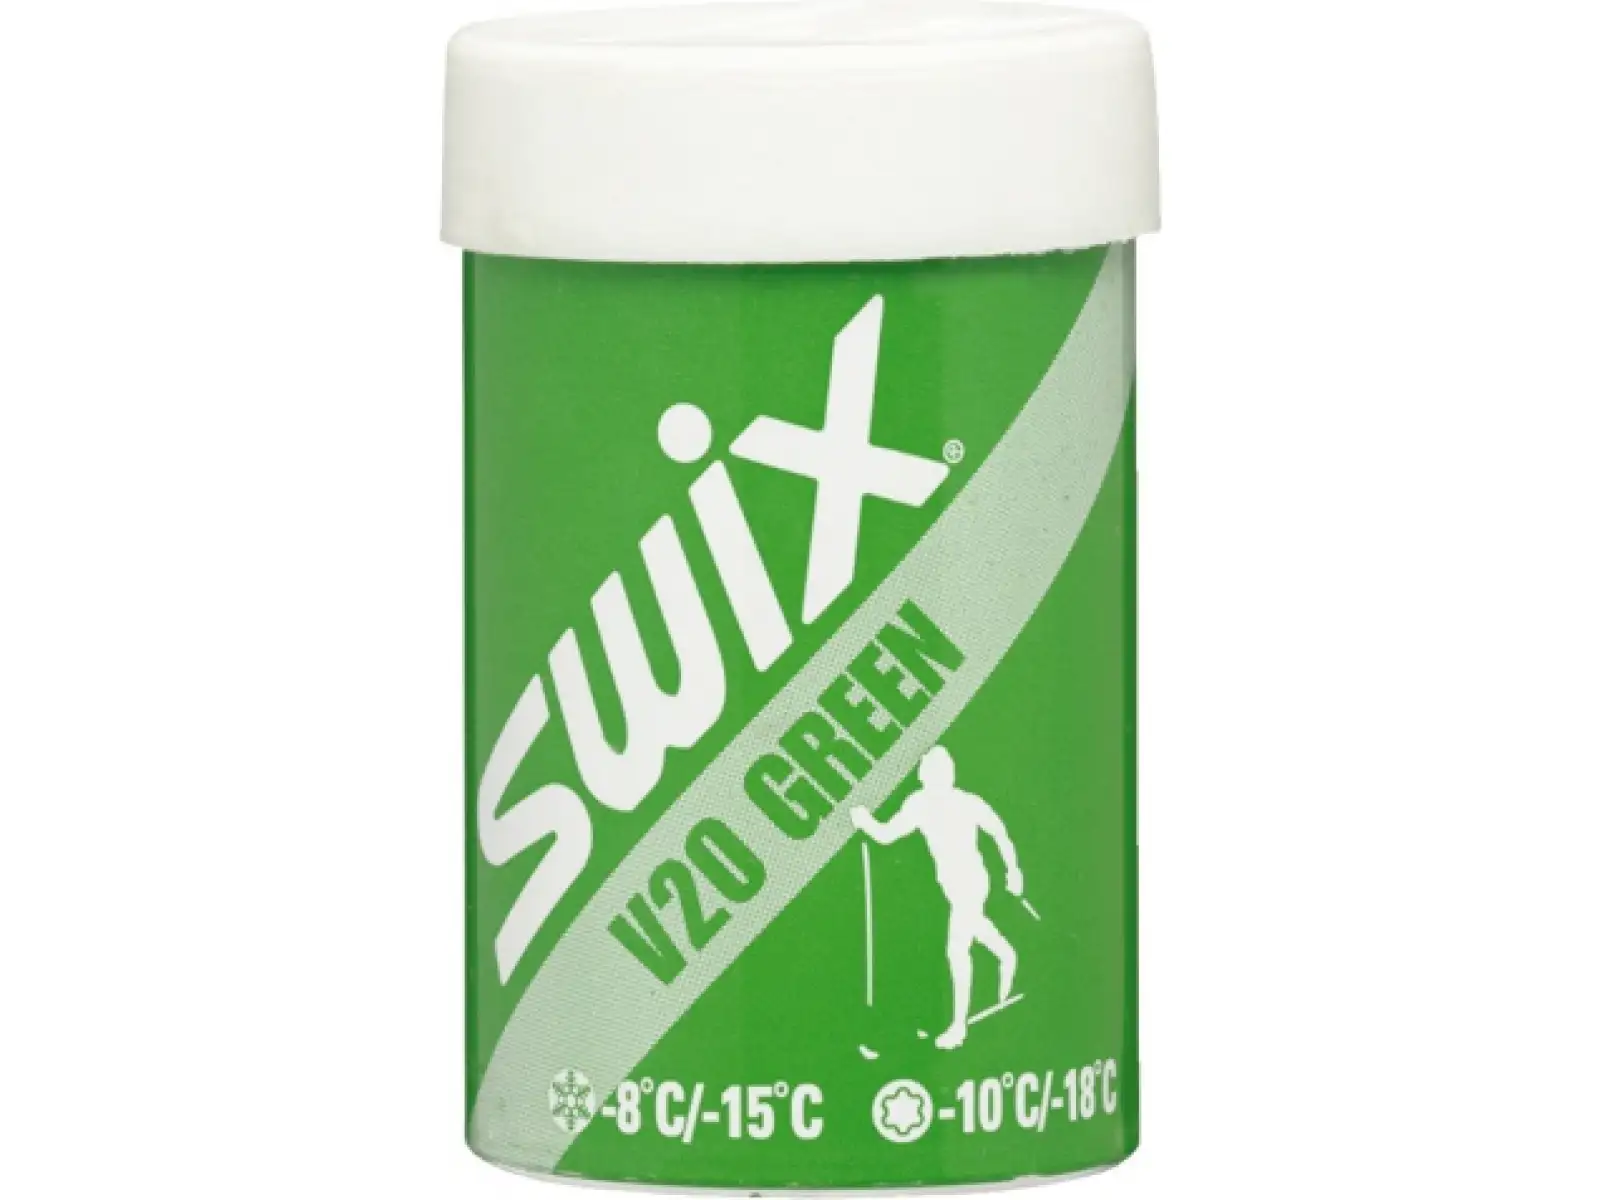 Swix V20 zelený 45 g odrazný vosk